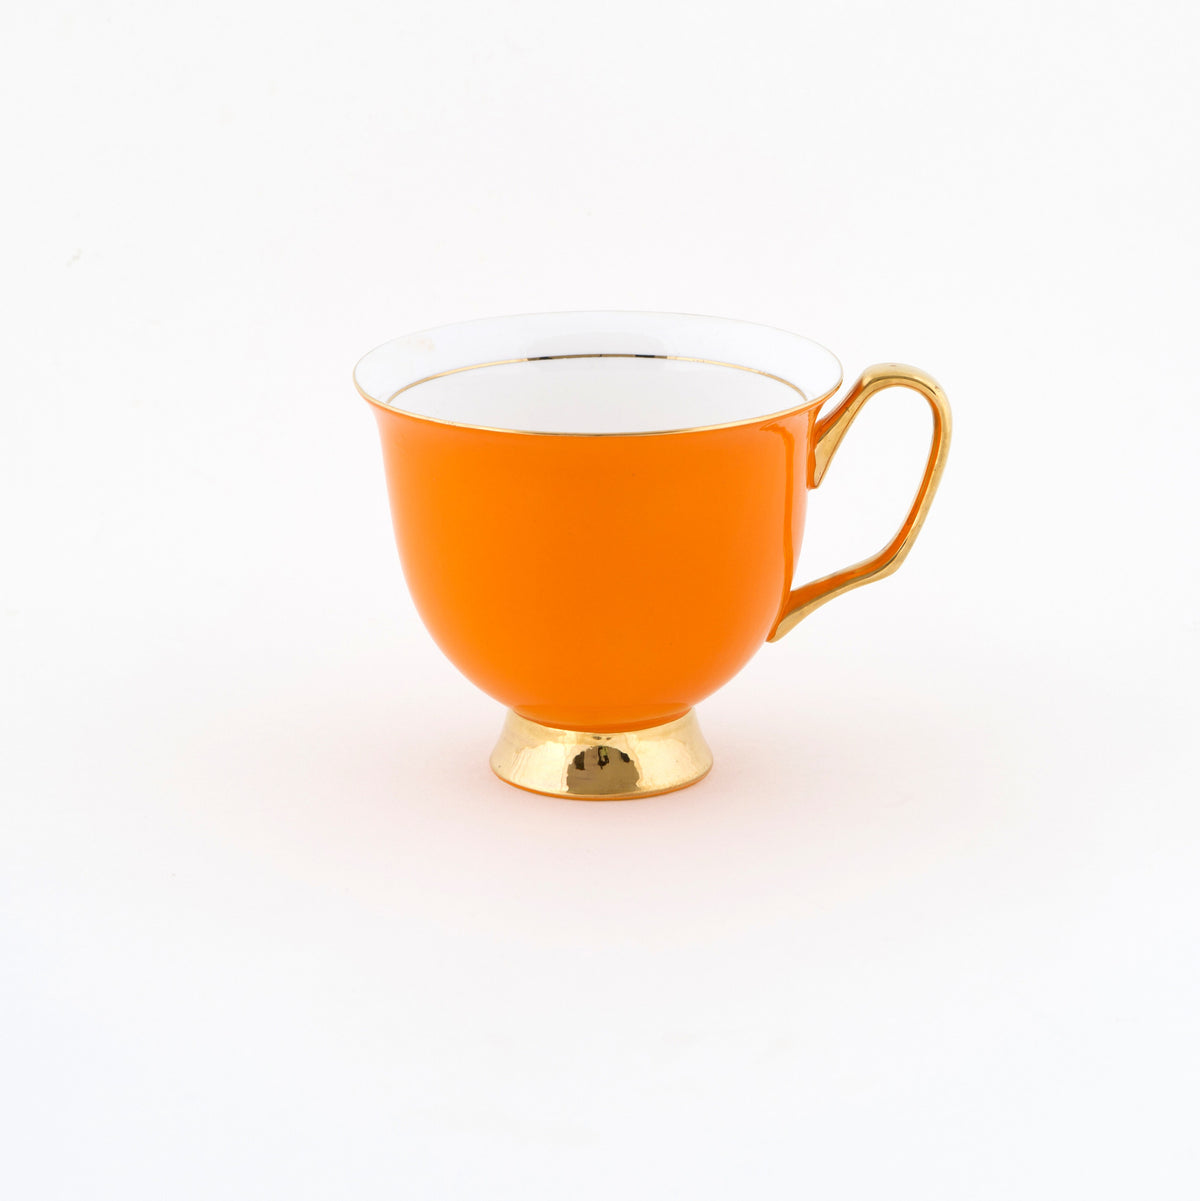 XL Orange Teacup and Saucer